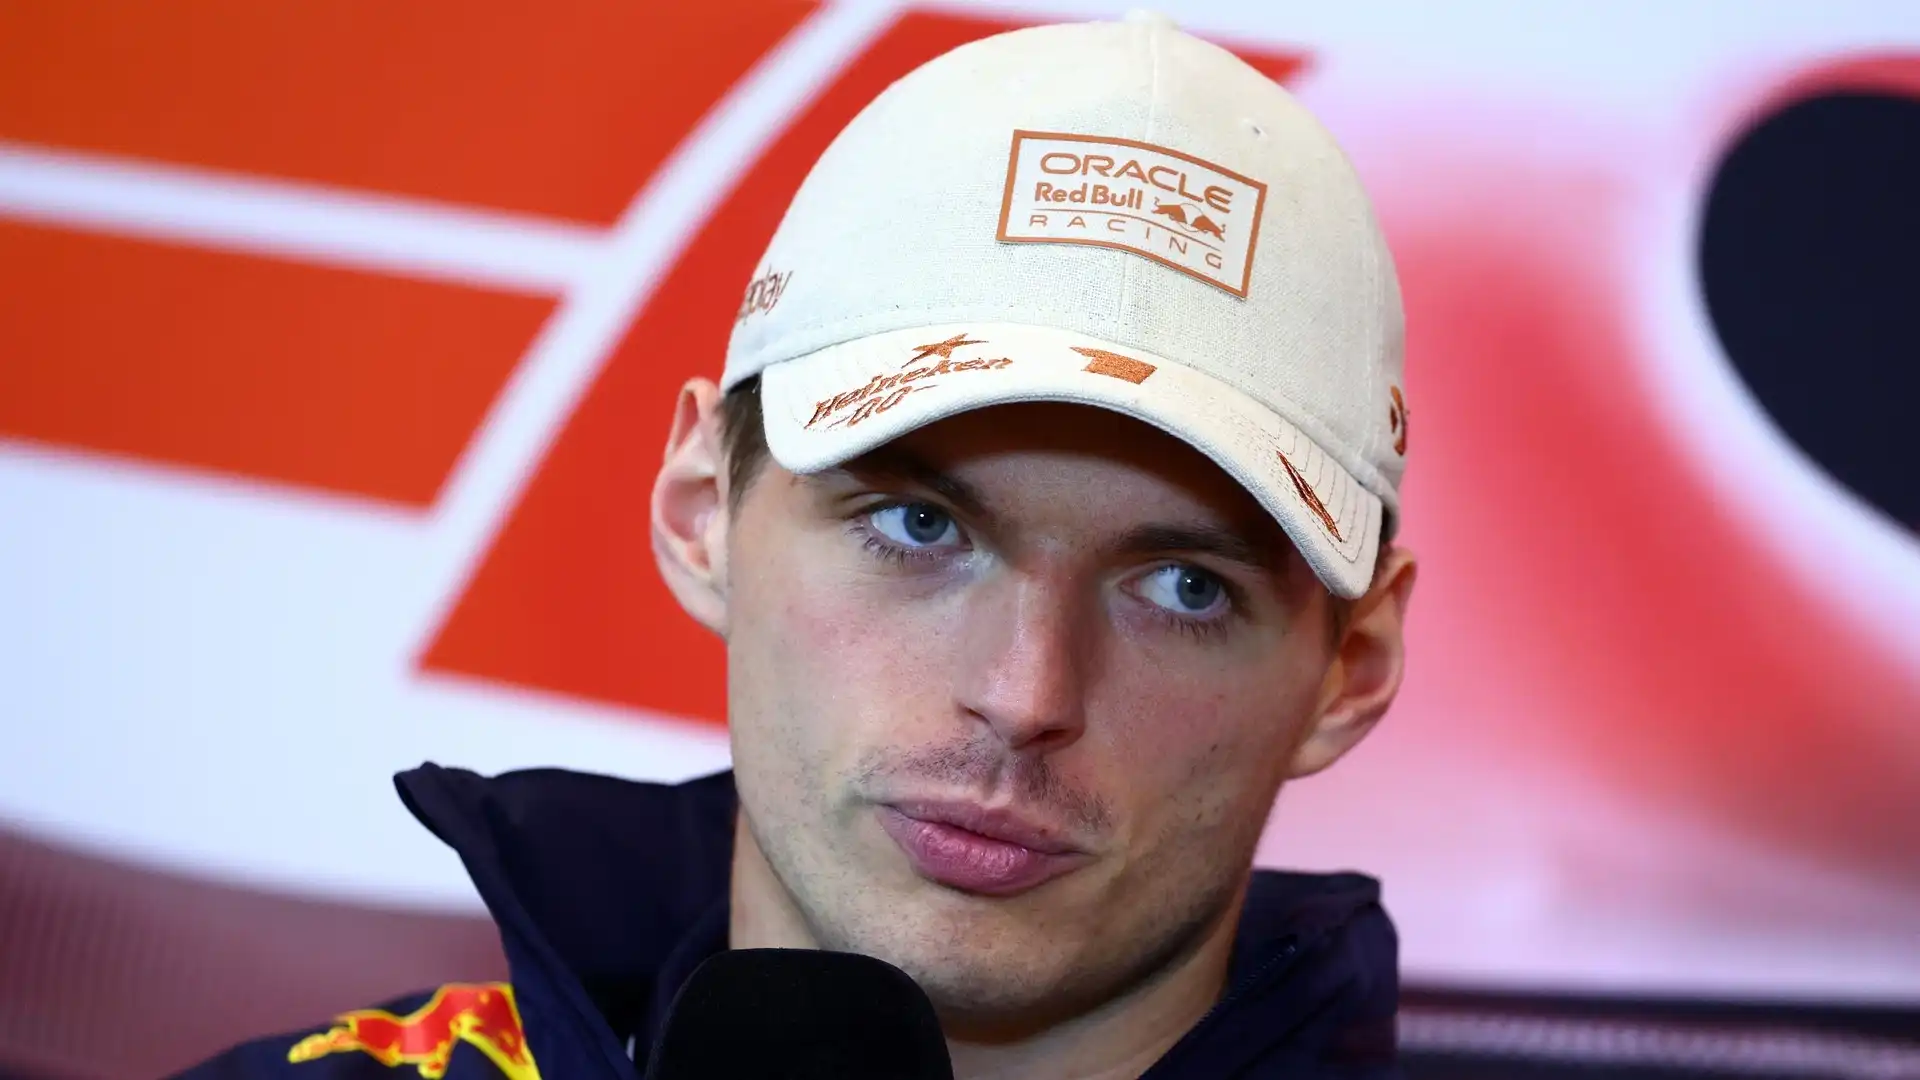 A Max Verstappen era stata presentata un'offerta importante da parte del team tedesco, ma la risposta sarebbe stata negativa